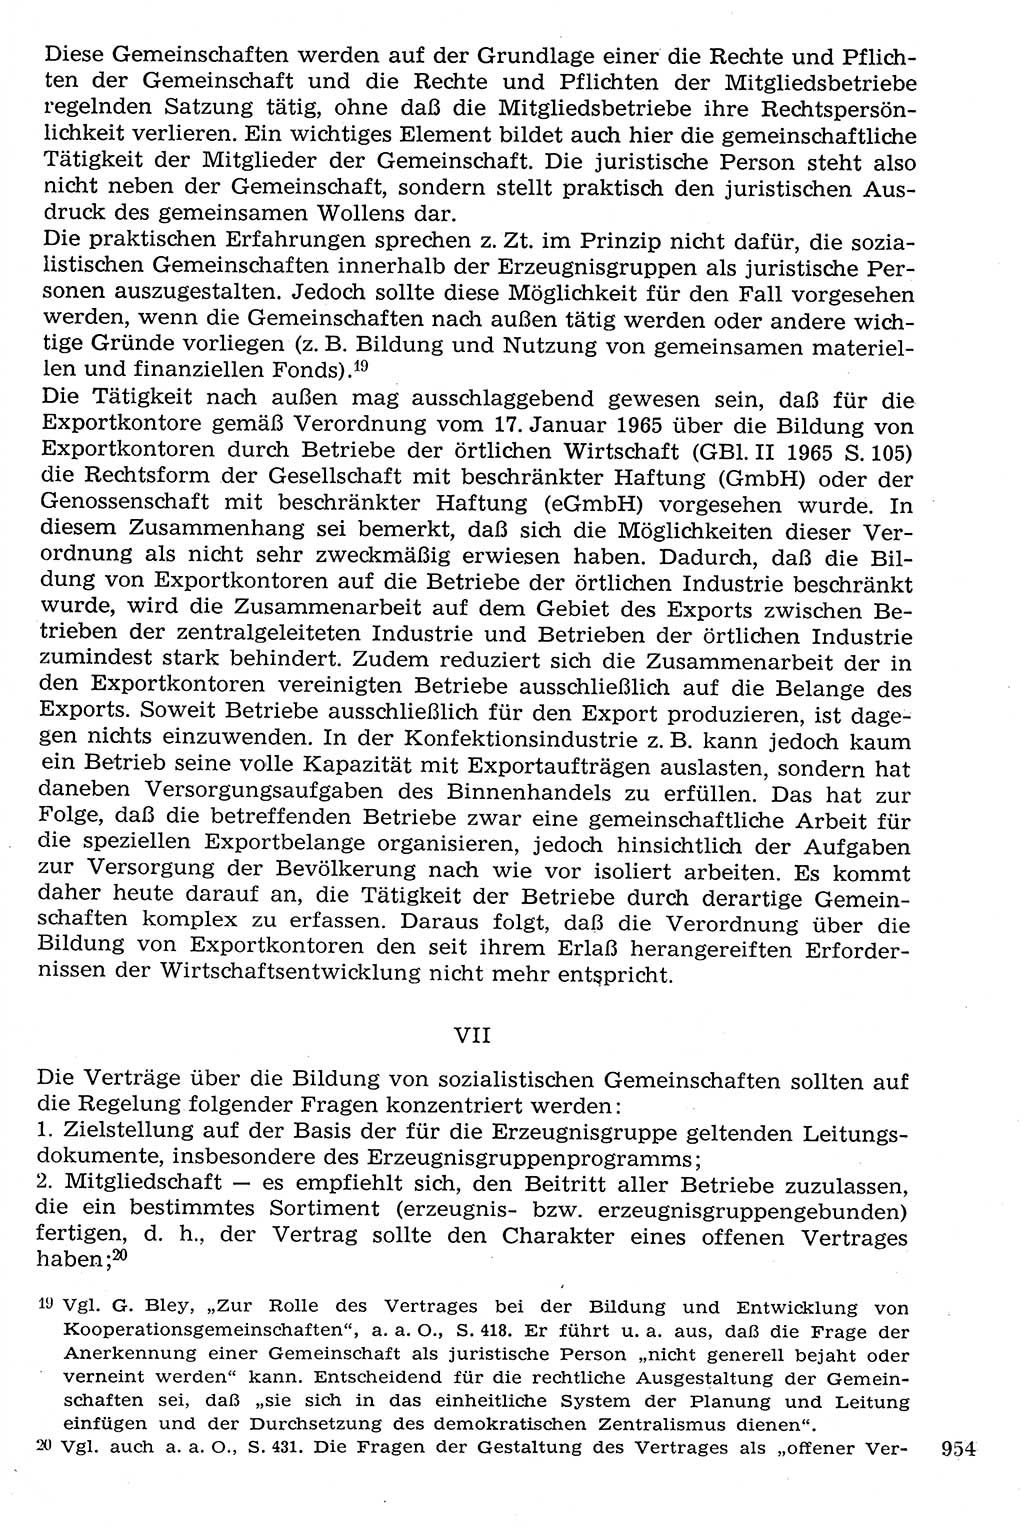 Staat und Recht (StuR), 17. Jahrgang [Deutsche Demokratische Republik (DDR)] 1968, Seite 954 (StuR DDR 1968, S. 954)